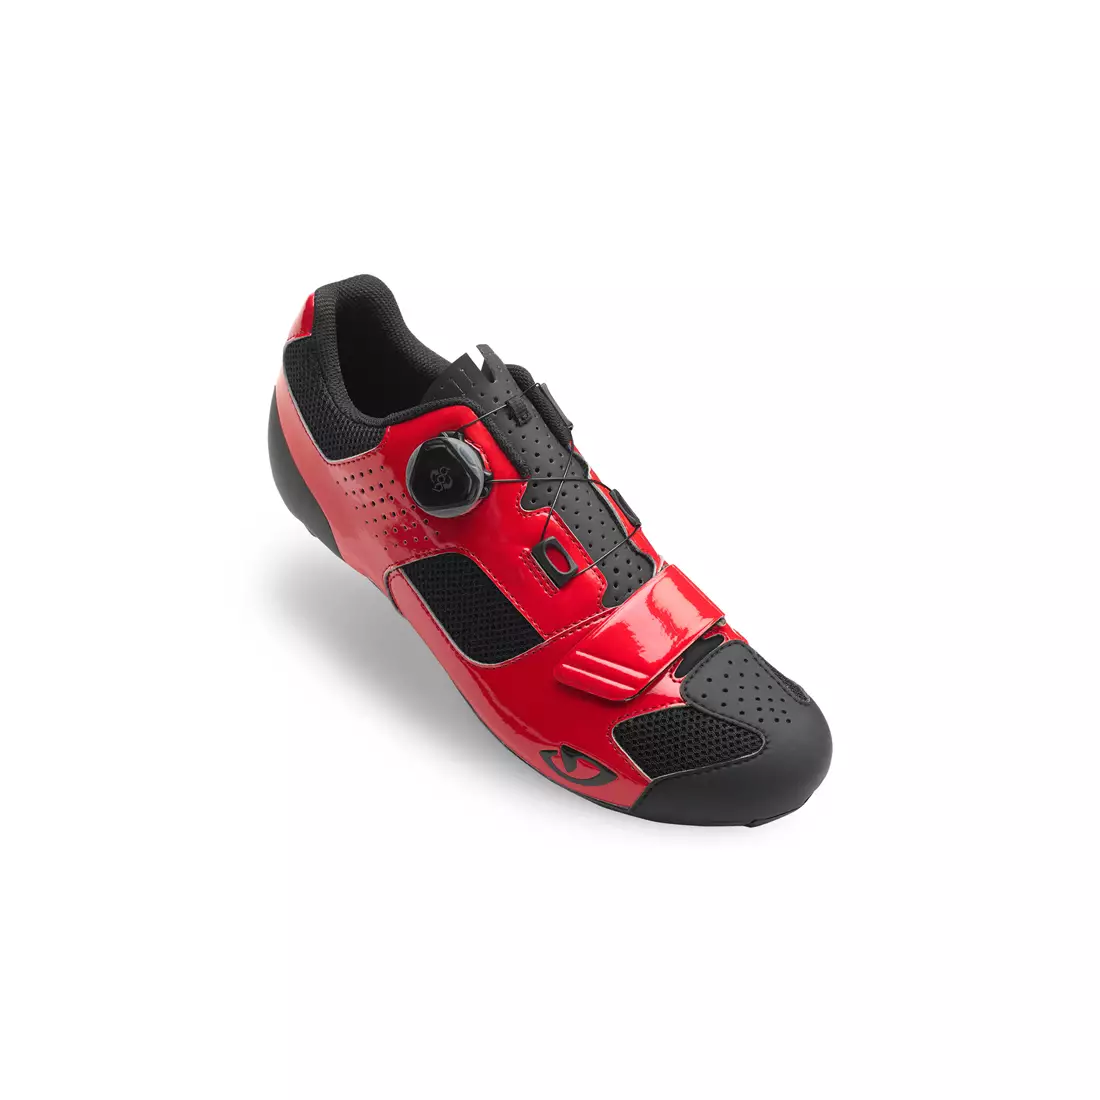 Pánská cyklistická obuv GIRO TRANS BOA bright red black 